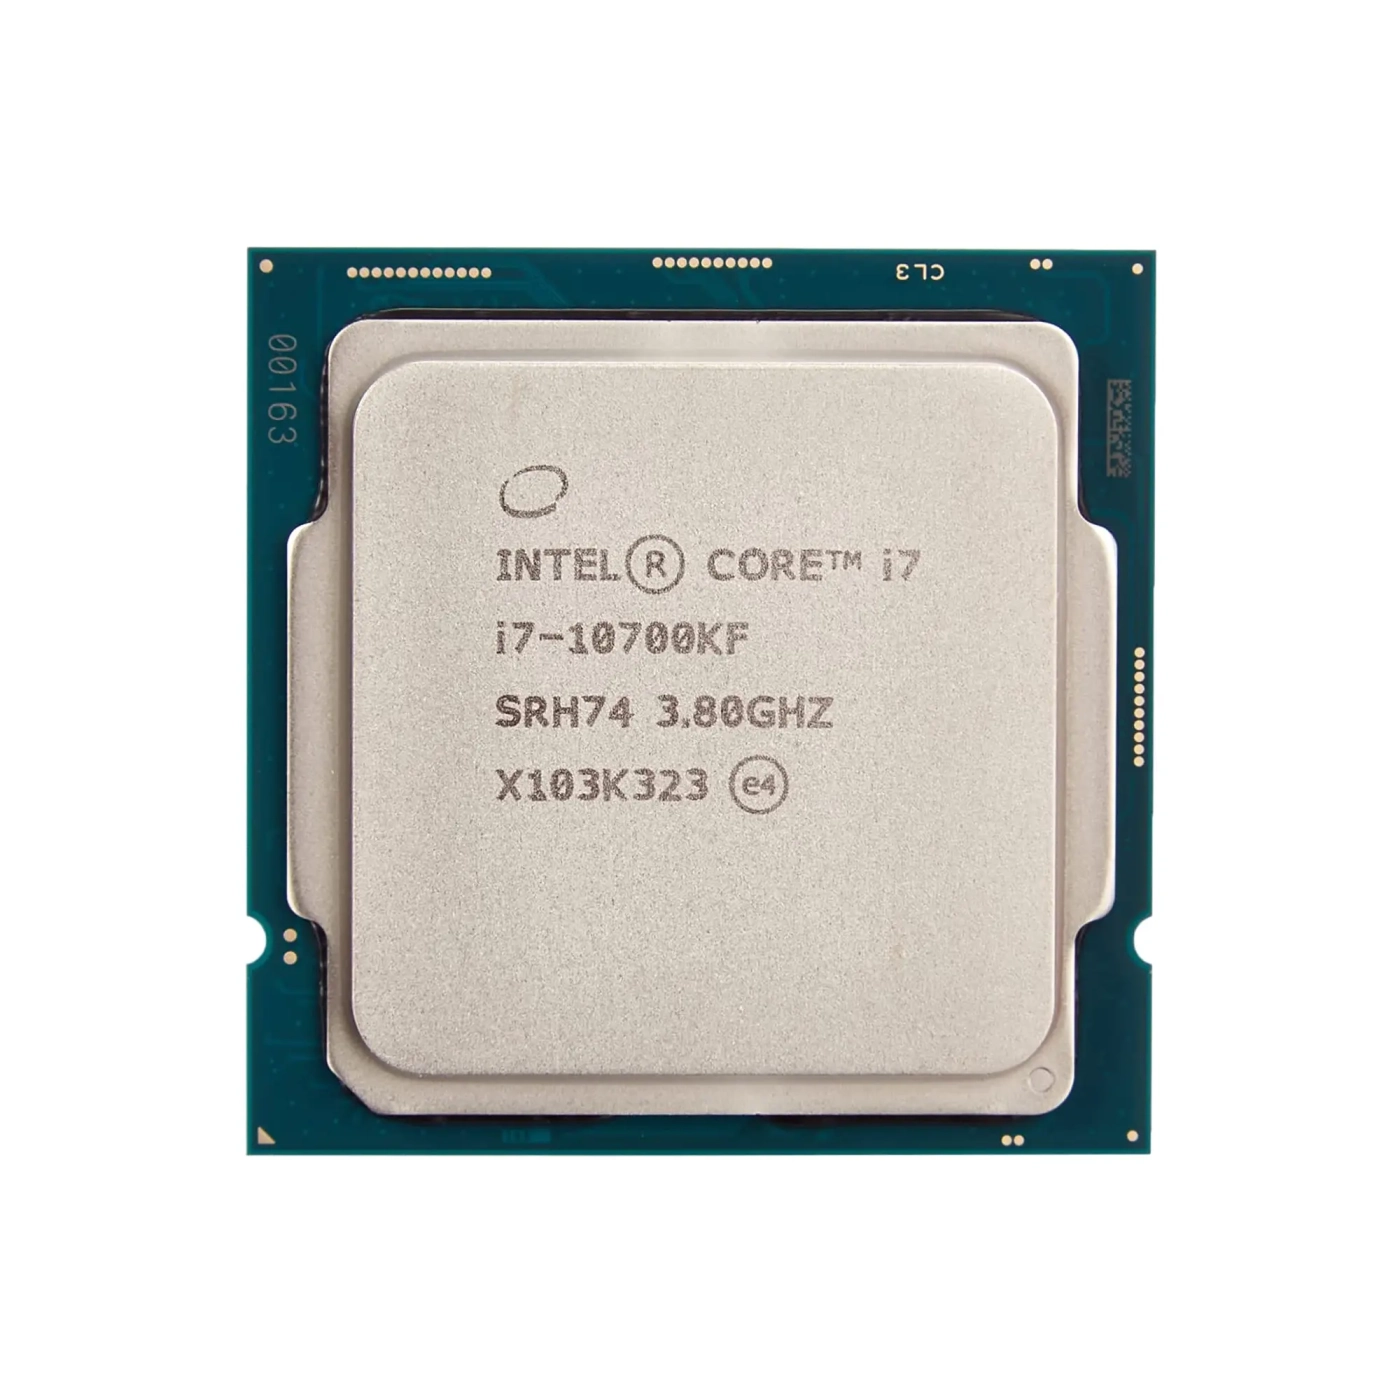 Купить Процессор INTEL Core i7-10700KF (3.8GHz, 16MB, LGA1200) TRAY - фото 1